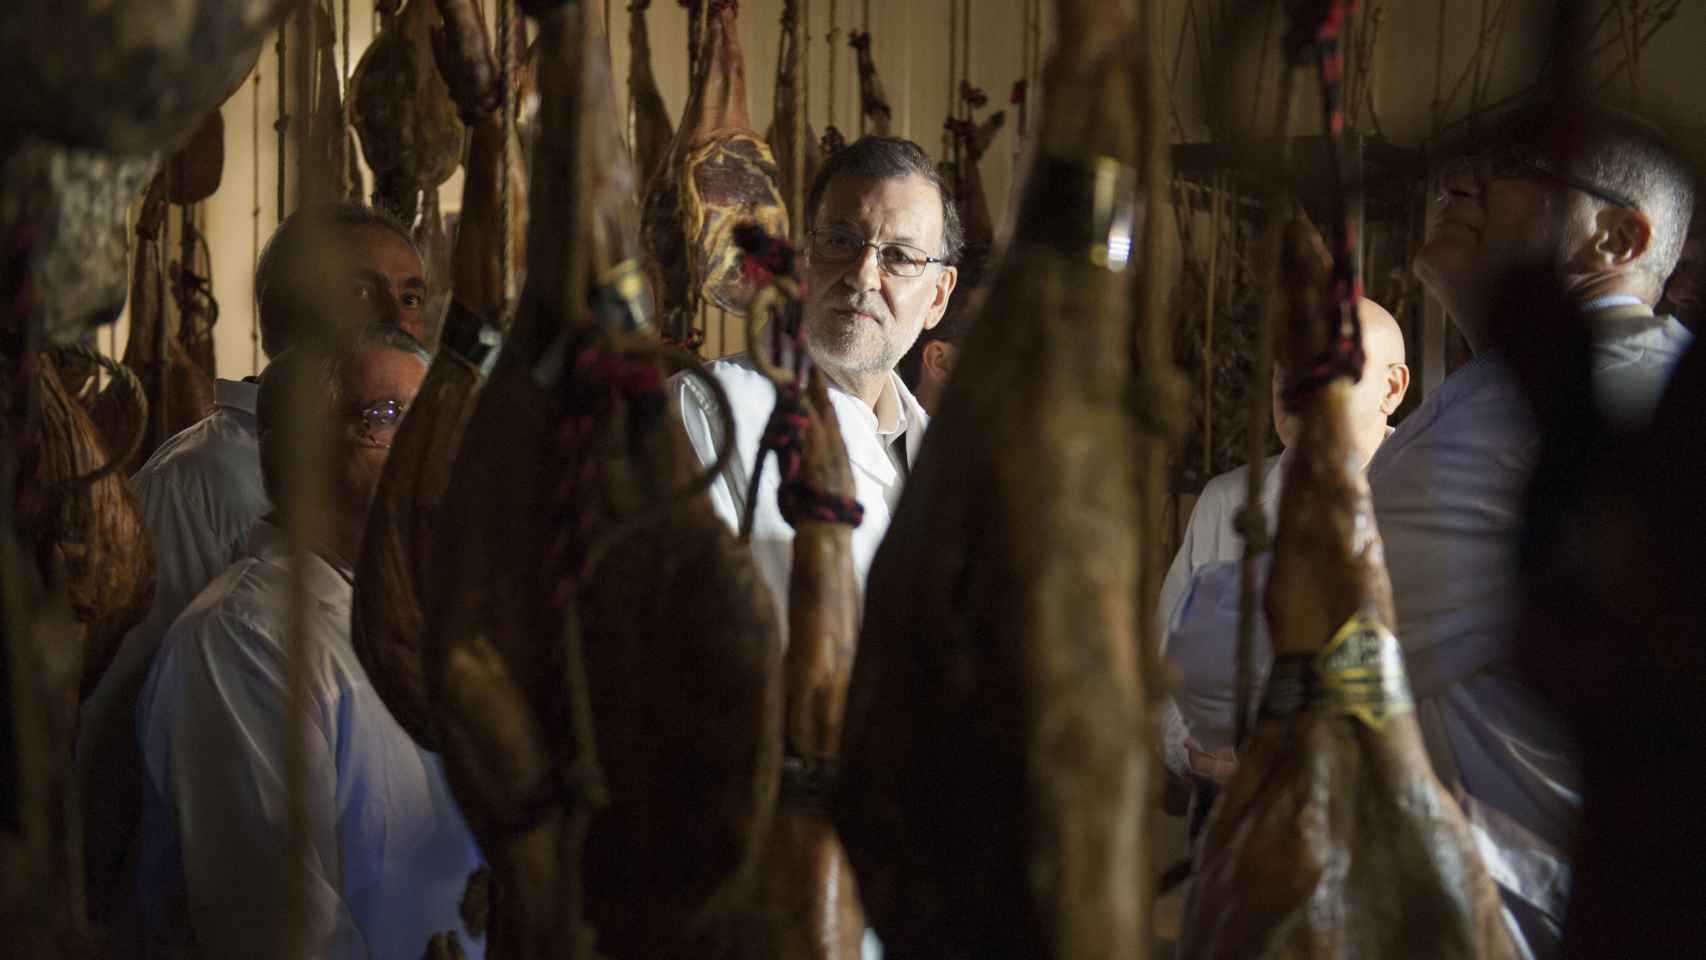 Mariano Rajoy en su visita al secadero de jamones.